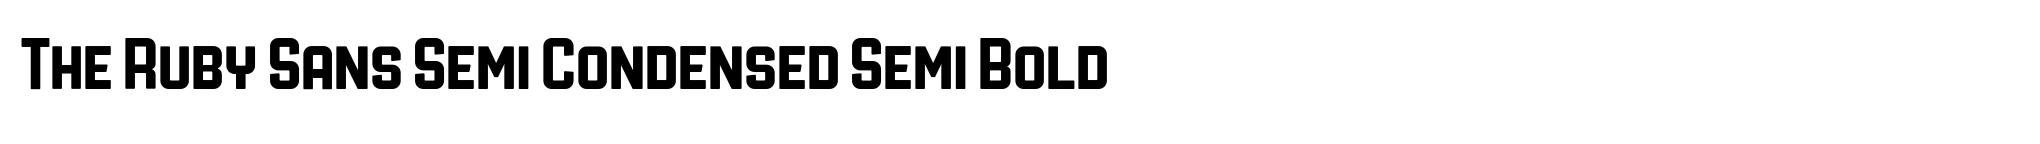 The Ruby Sans Semi Condensed Semi Bold image